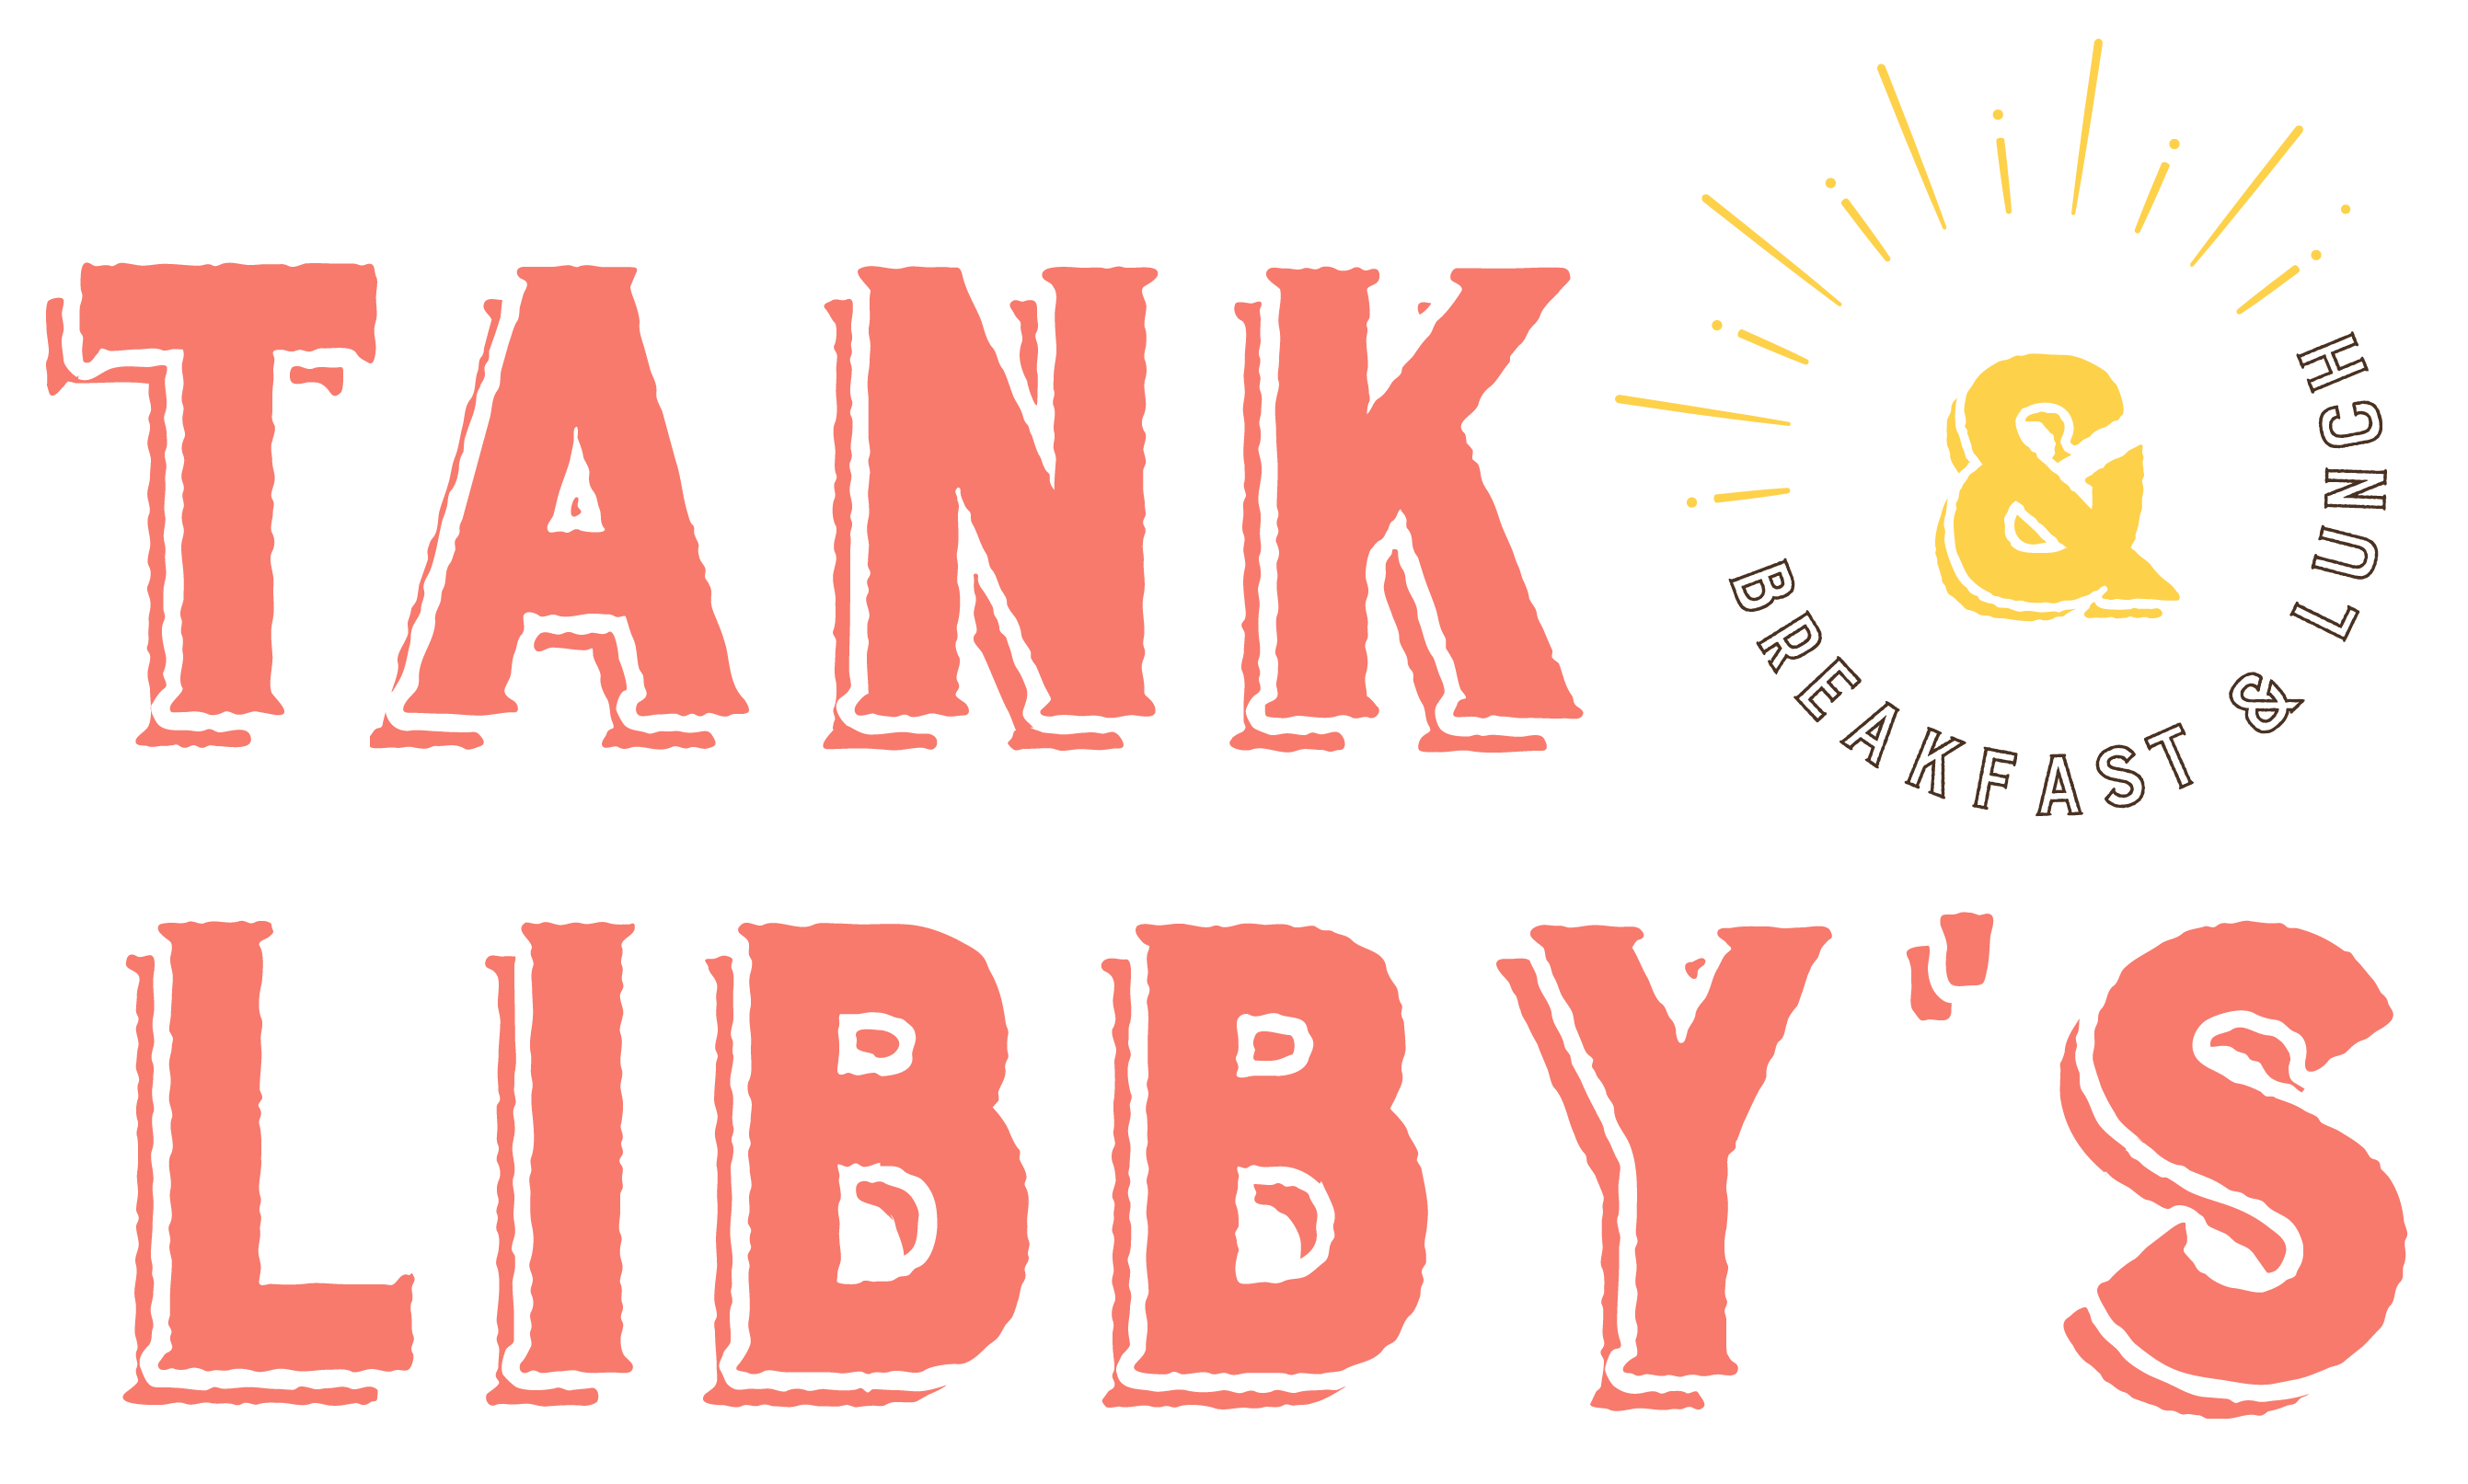 Libby's Logo - Tank and Libbys